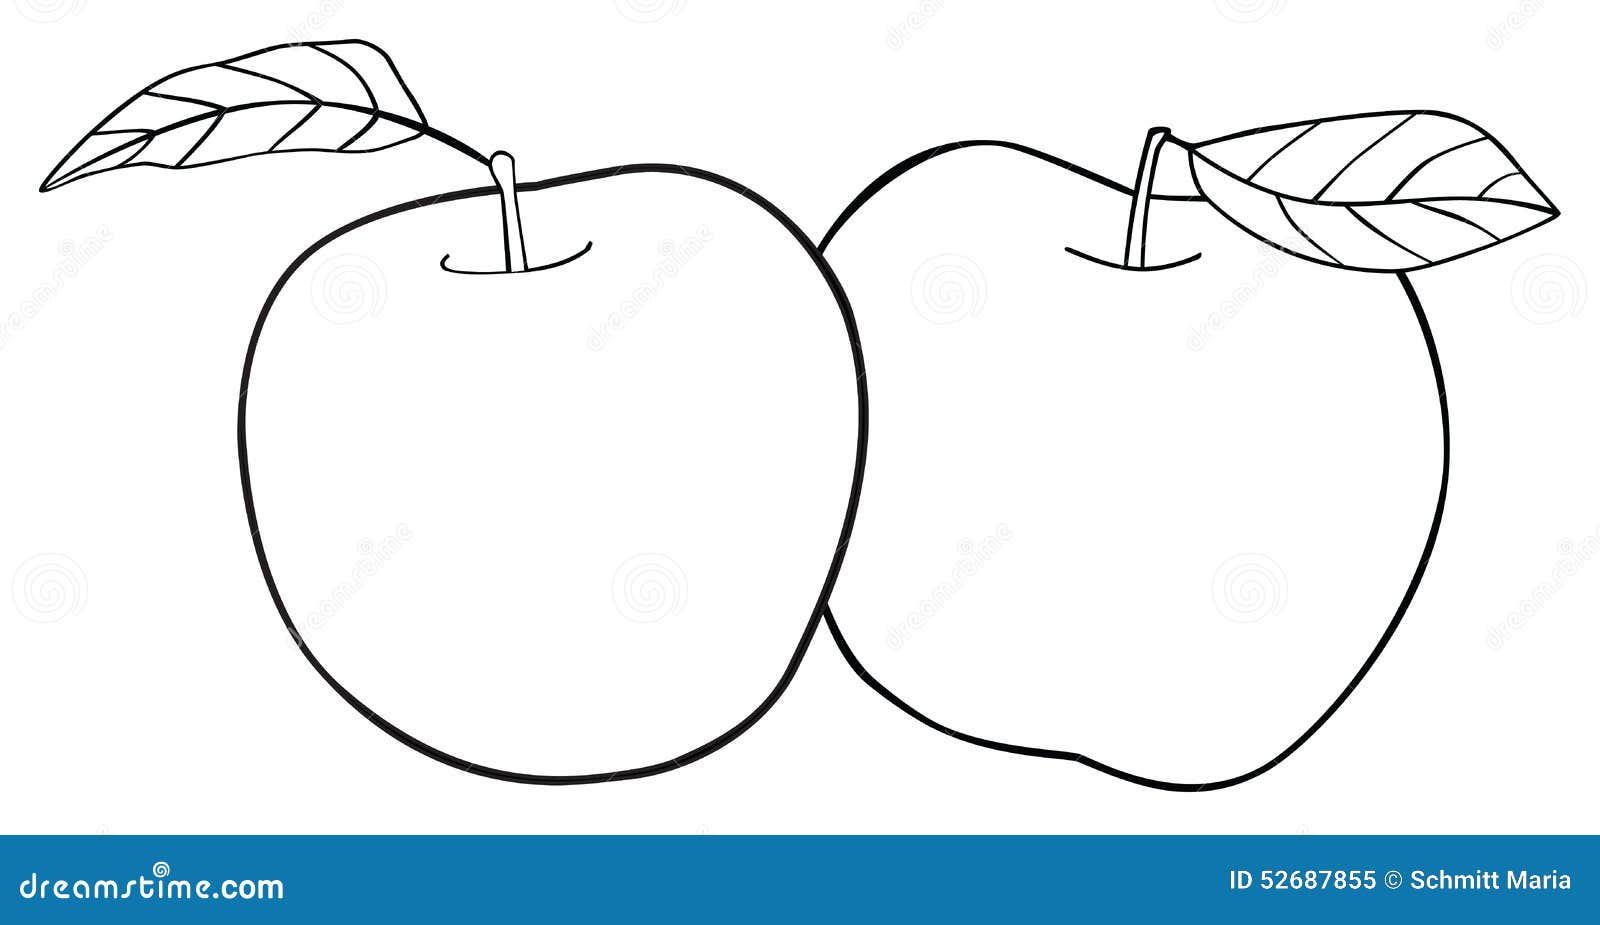 Яблоки на белом фоне для раскрашивания